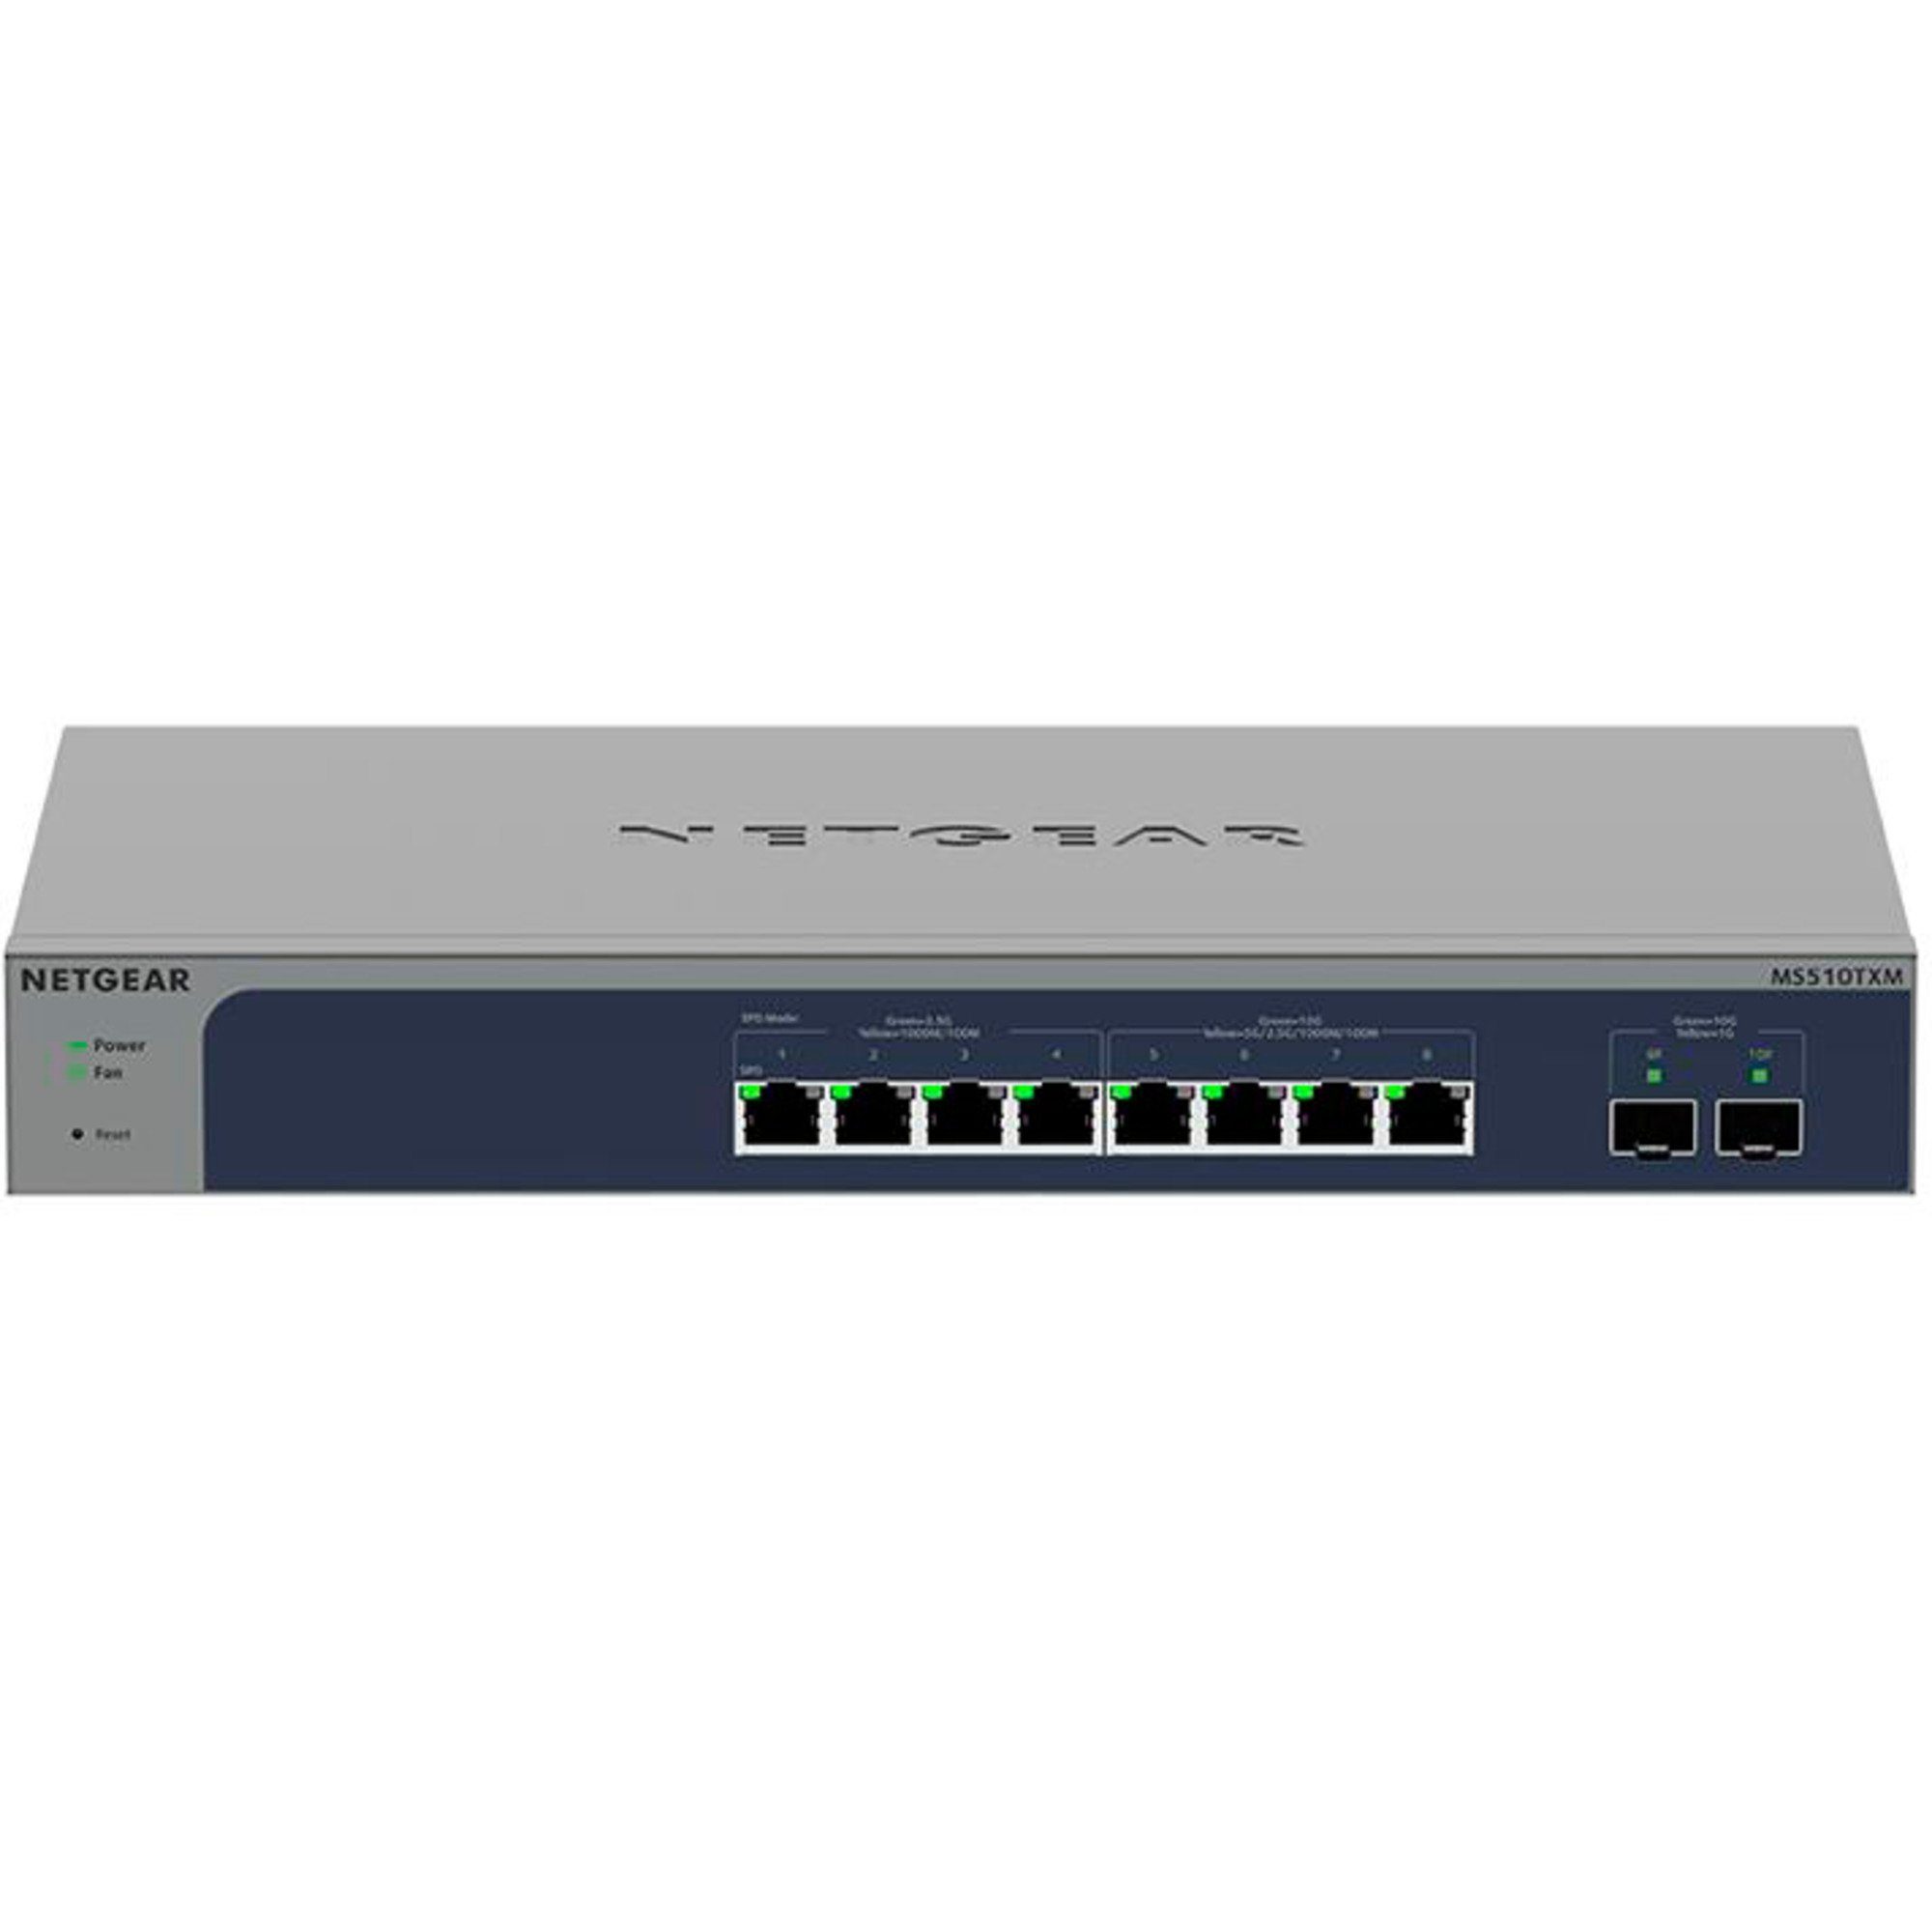 MS510TXM, Switch Netzwerk-Switch NETGEAR Netgear